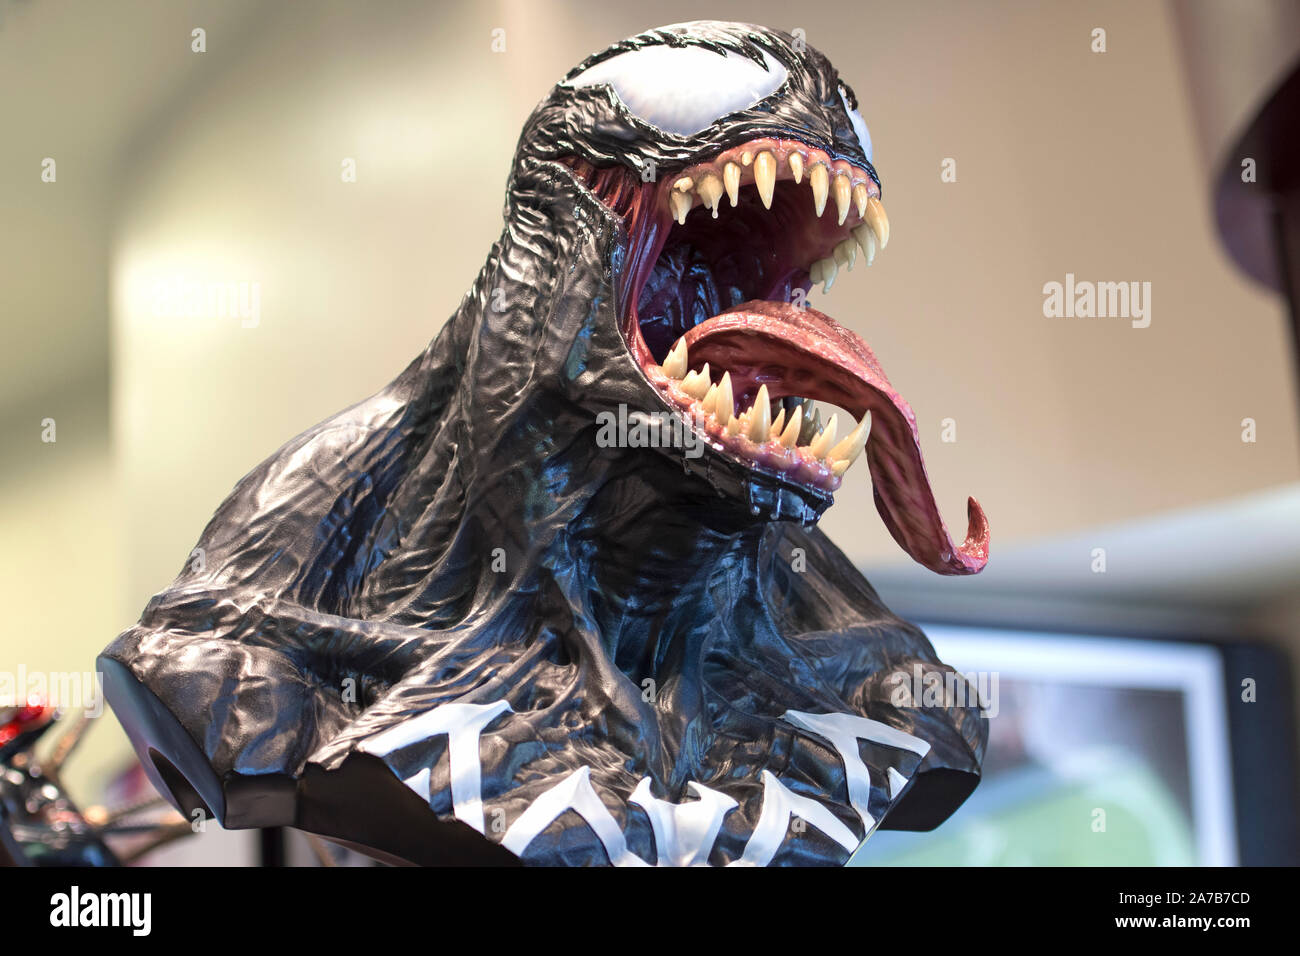 Buste de personnage Film Marvel Venom, dans un magasin à Universal Studios Orlando, antihéros, super-héros du film Eddie Brock joué par Tom Hardy, masque exotiques Banque D'Images